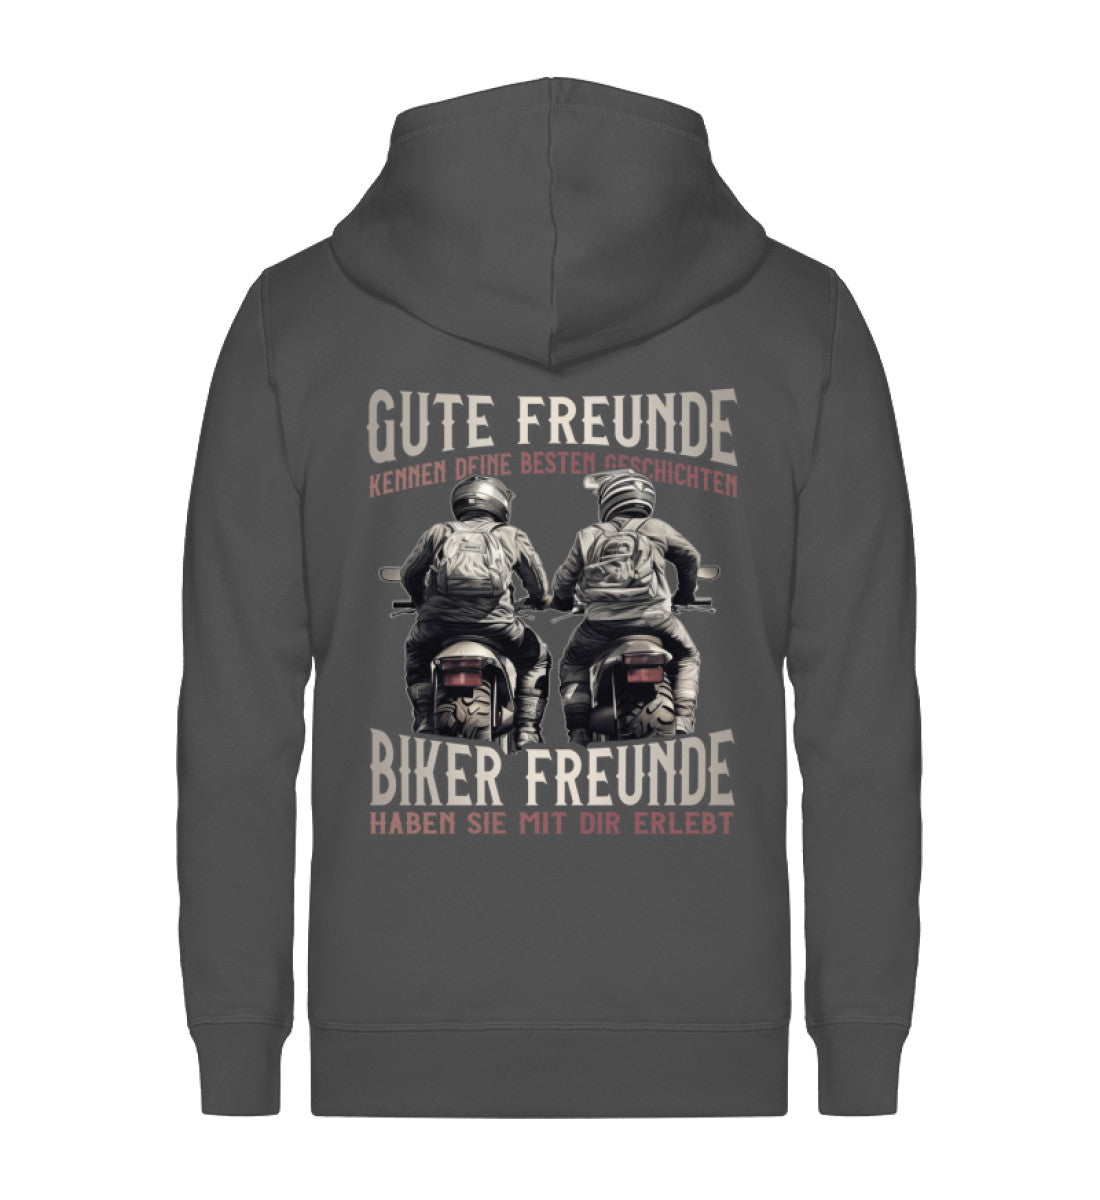 Eine Reißverschluss-Jacke für Motorradfahrer von Wingbikers mit dem Aufdruck, Gute Freunde kenne deine Geschichten - Biker haben sie mit dir erlebt, in dunkelgrau.